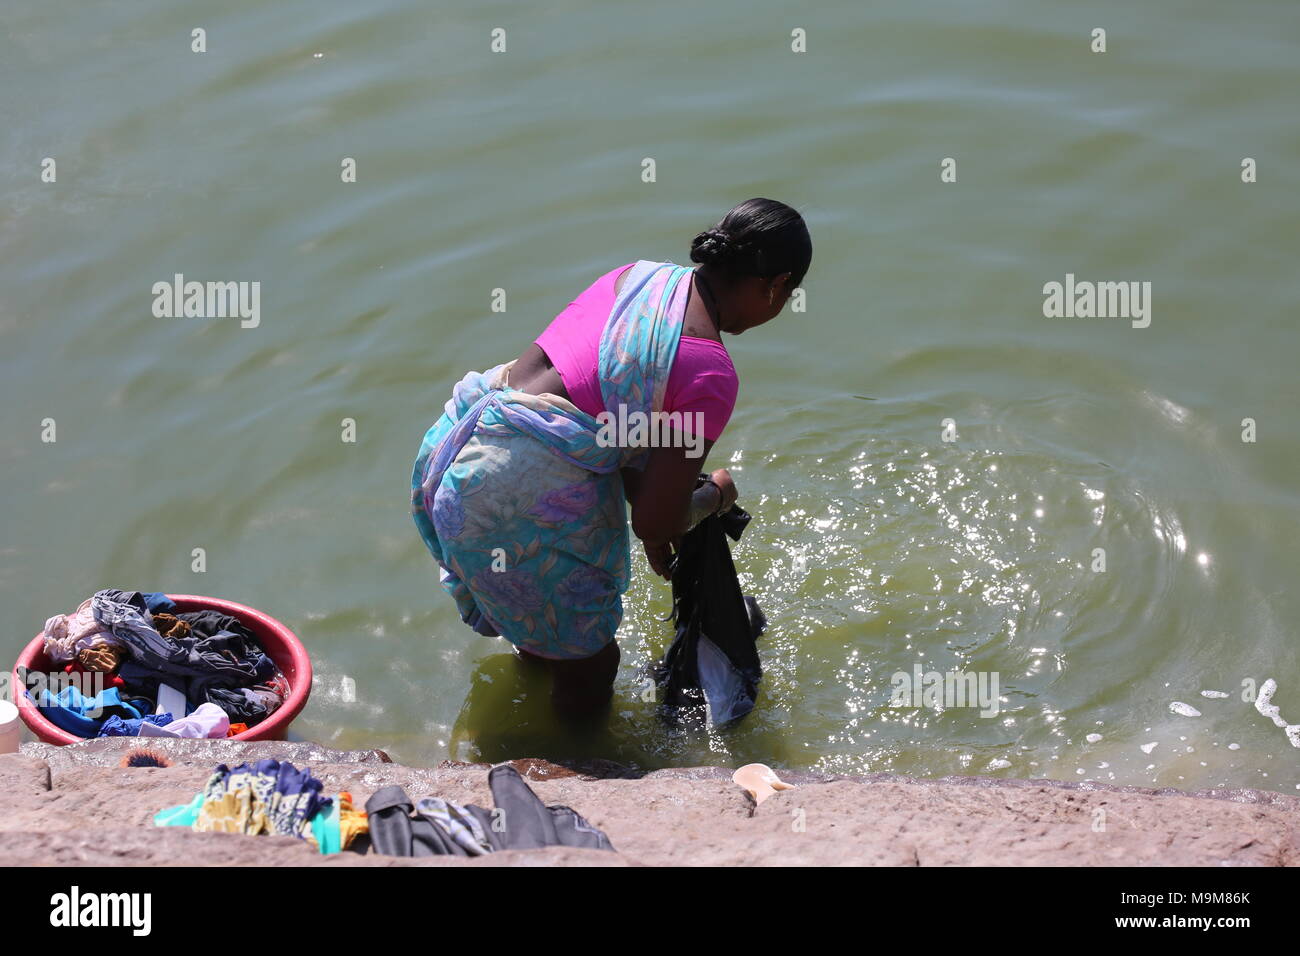 Indian woman washing clothes and dishes on the river - inderin beim waschen von Kleidung und geschirr am fluss Stock Photo